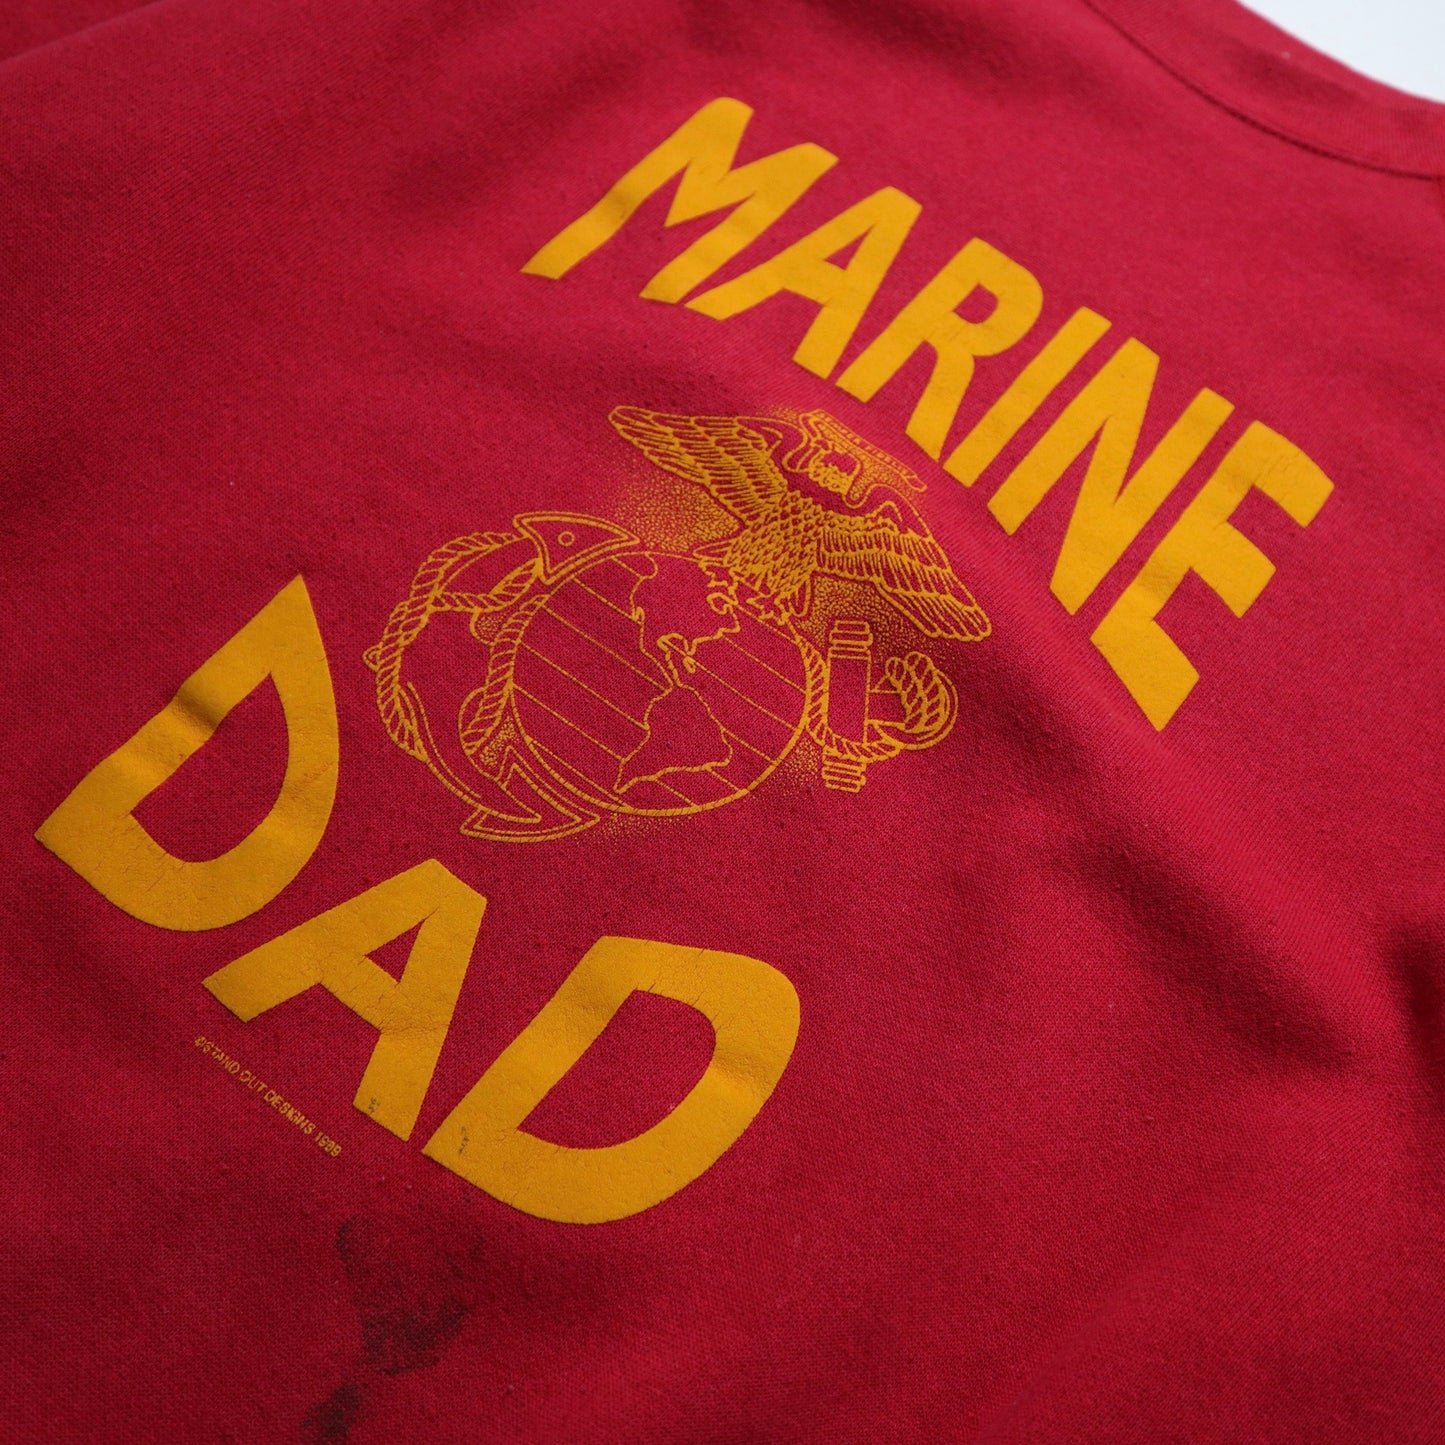 1989 Marine Dad レッド オフセット スウェットシャツ カレッジ T シャツ